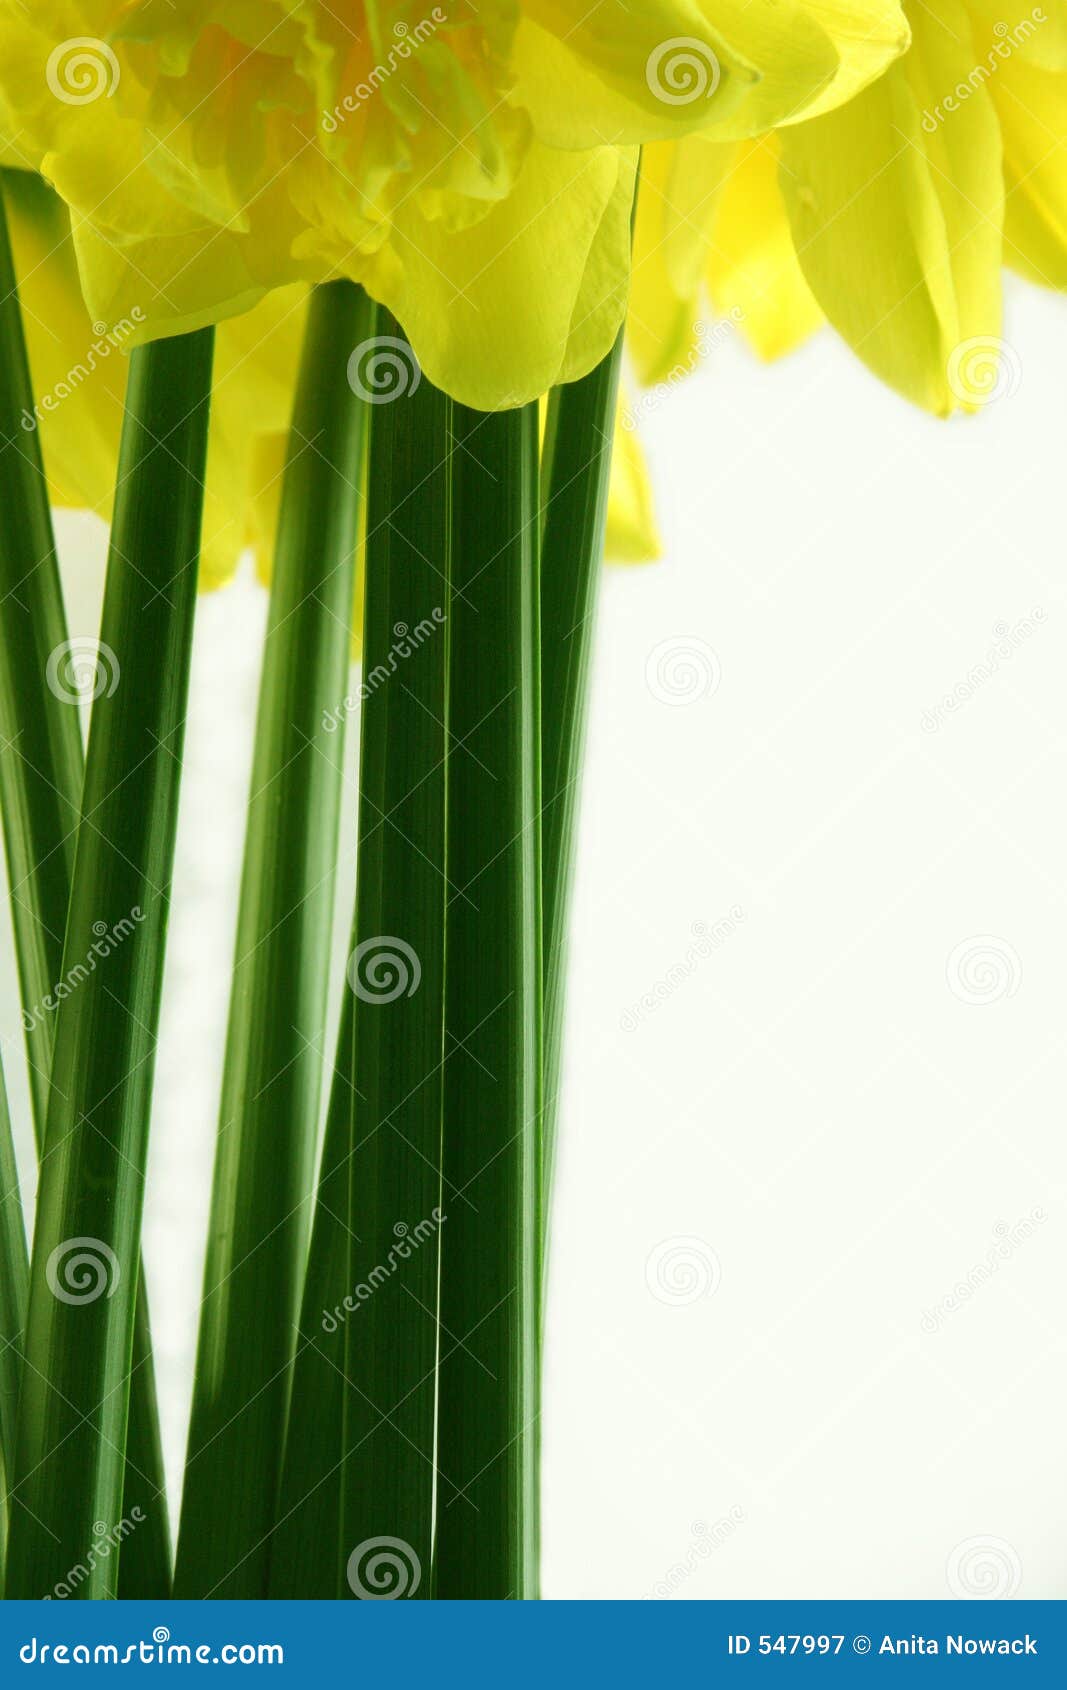 Narcyz łodygi. Kwiat kiście klimatyczne kopii mądrą narcyzy projektu Wielkanoc itd ataku kwiat wcześniej rodzaju długie narcyzów okazje płatki row wiosny wywodzącego się potrójne umiarkowanych żółty